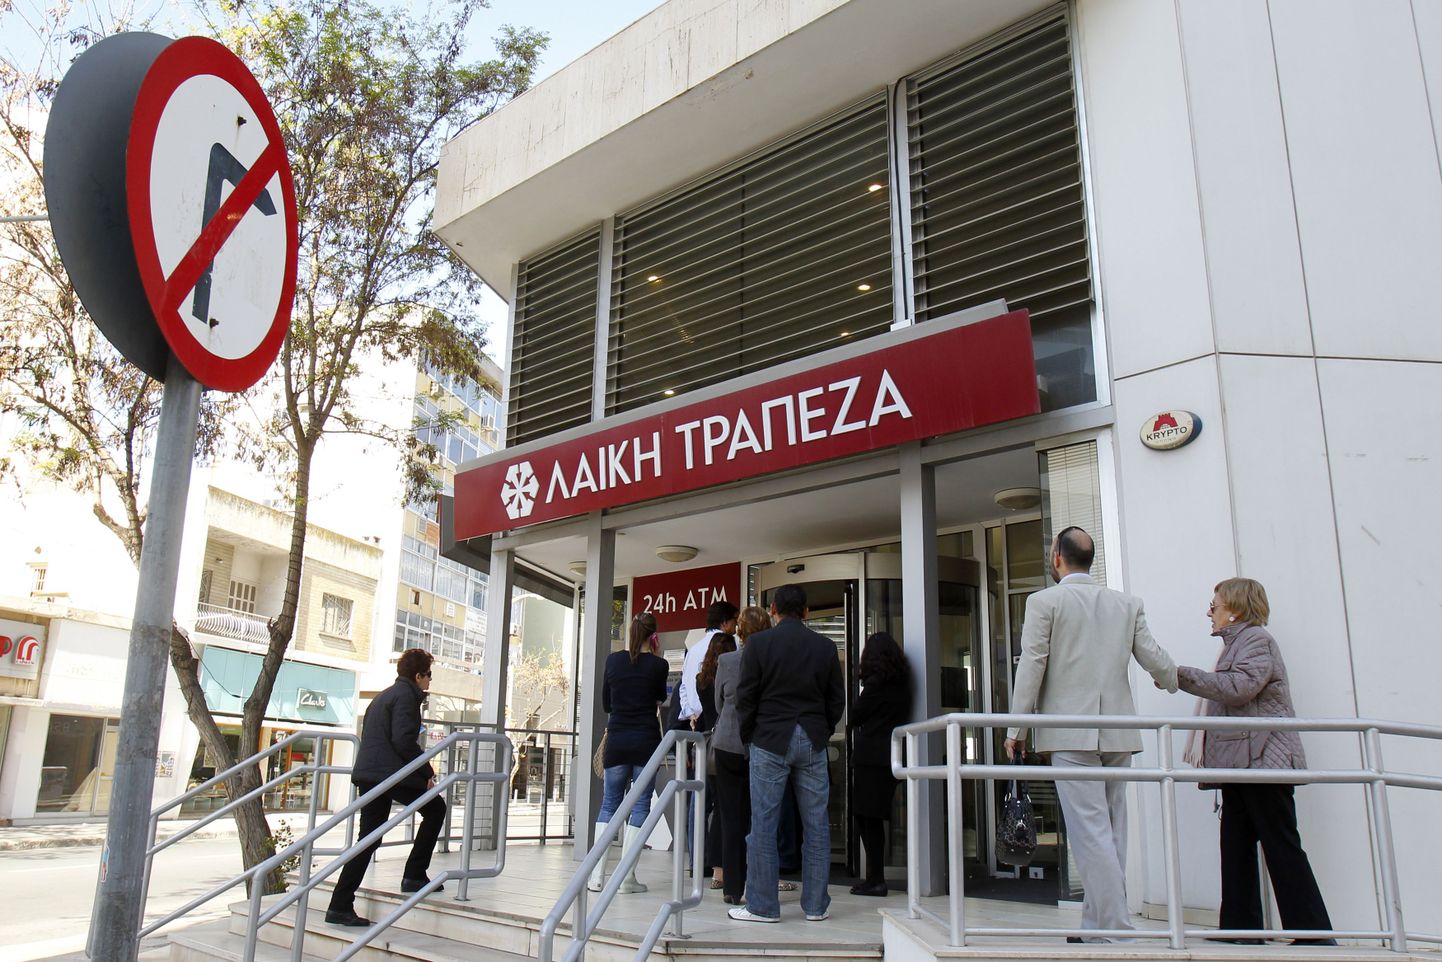 Küprose kahe suurema panga hoiustajate tohutud kaotused seoses päästepaketi tingimustega on tekitanud riigis ägeda pahameele kõigi suhtes, kes arvatakse koorma jagamisest ebaõiglaselt kõrvale hoidvat.